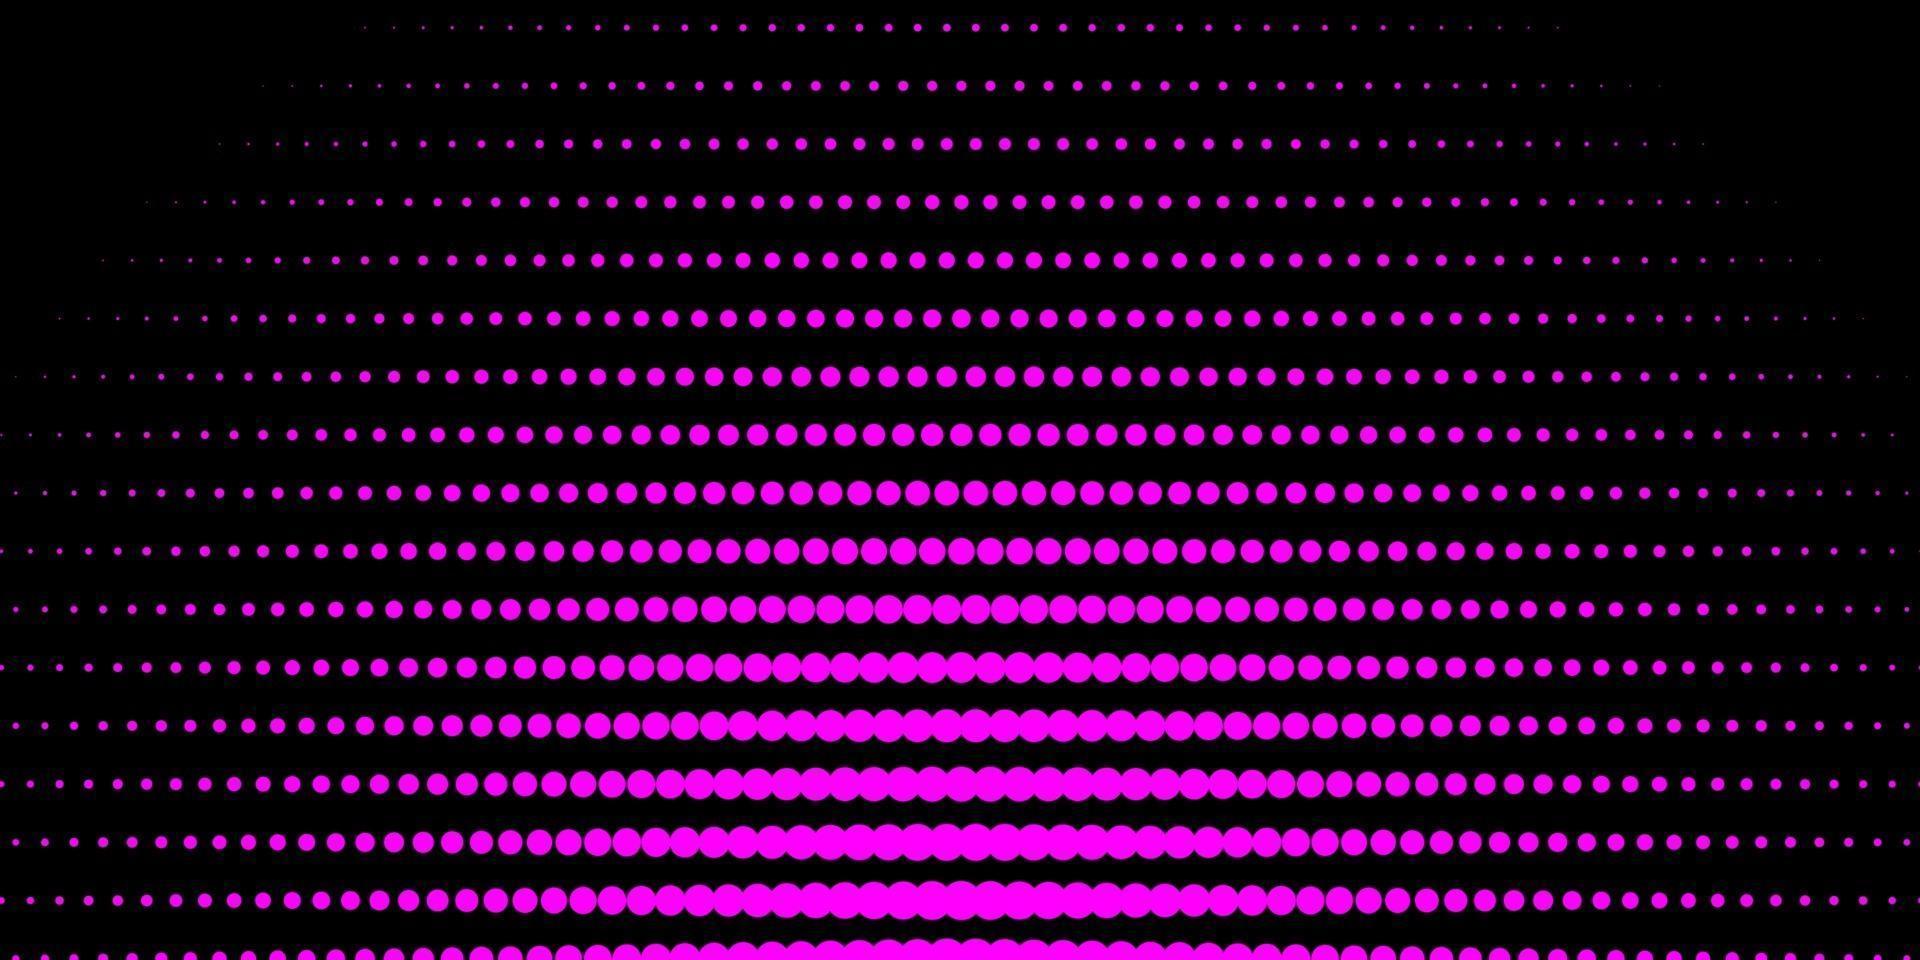 patrón de vector rosa oscuro con esferas.